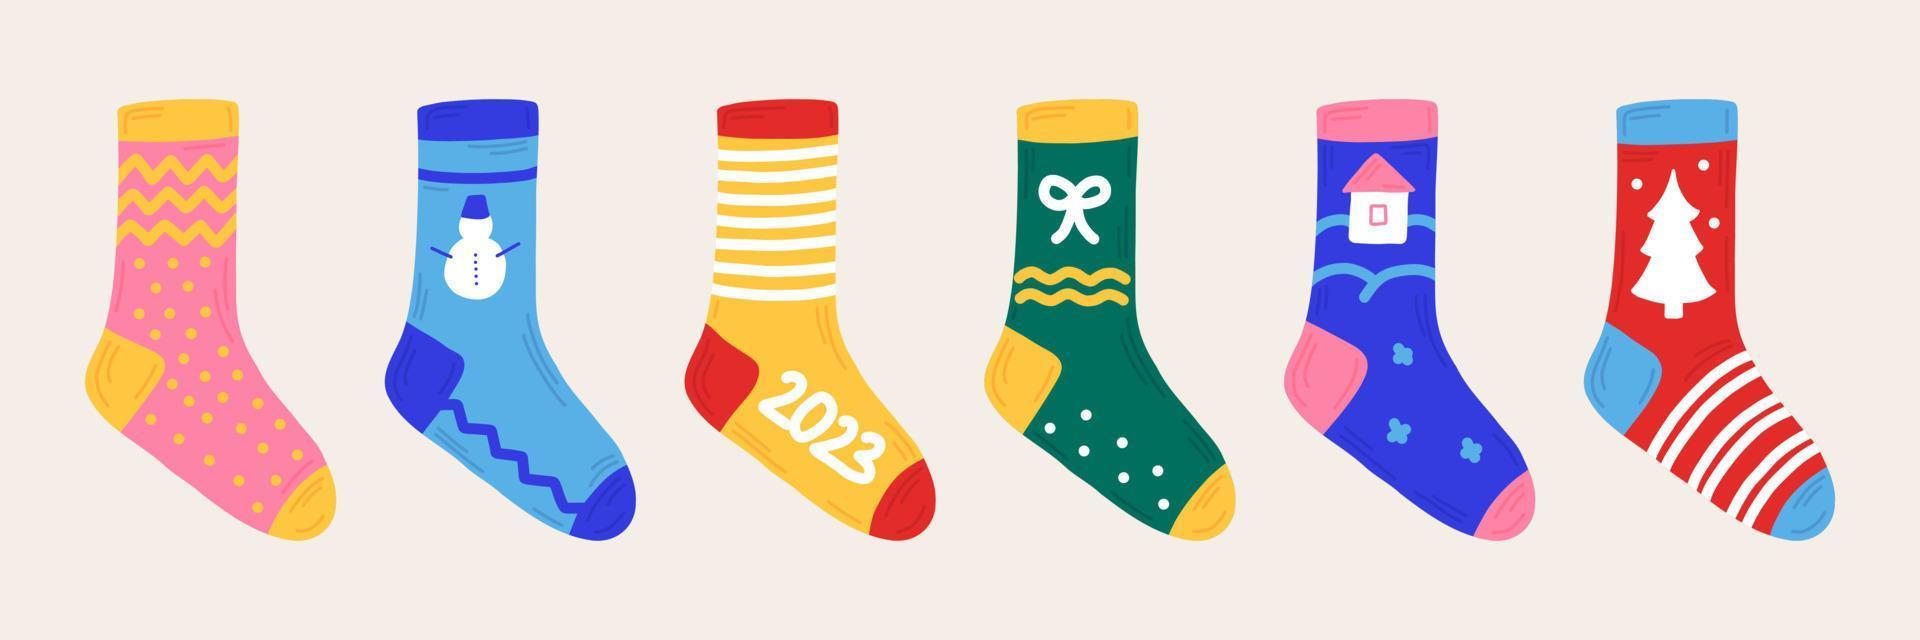 nouvel an set chaussettes de noël style dessiné à la main. autocollants isolés, éléments pour la conception de brochures, invitations. vecteur